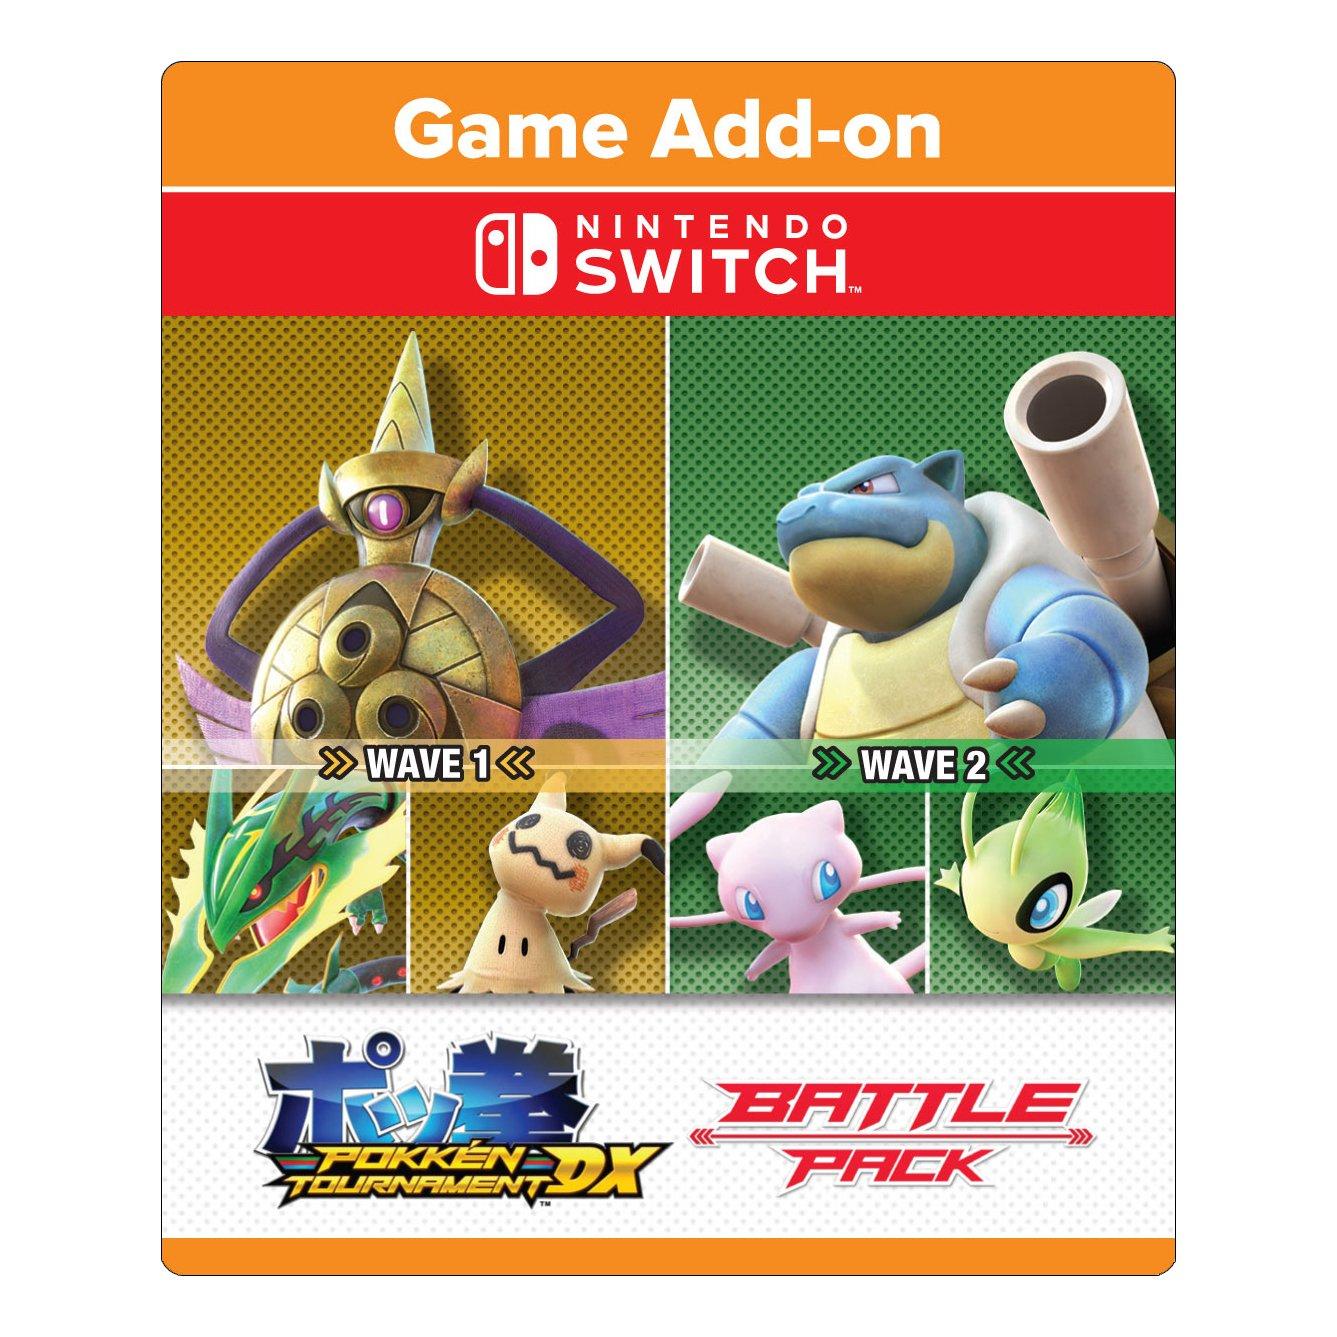 Pokémon Tournament DX está grátis no Nintendo Switch